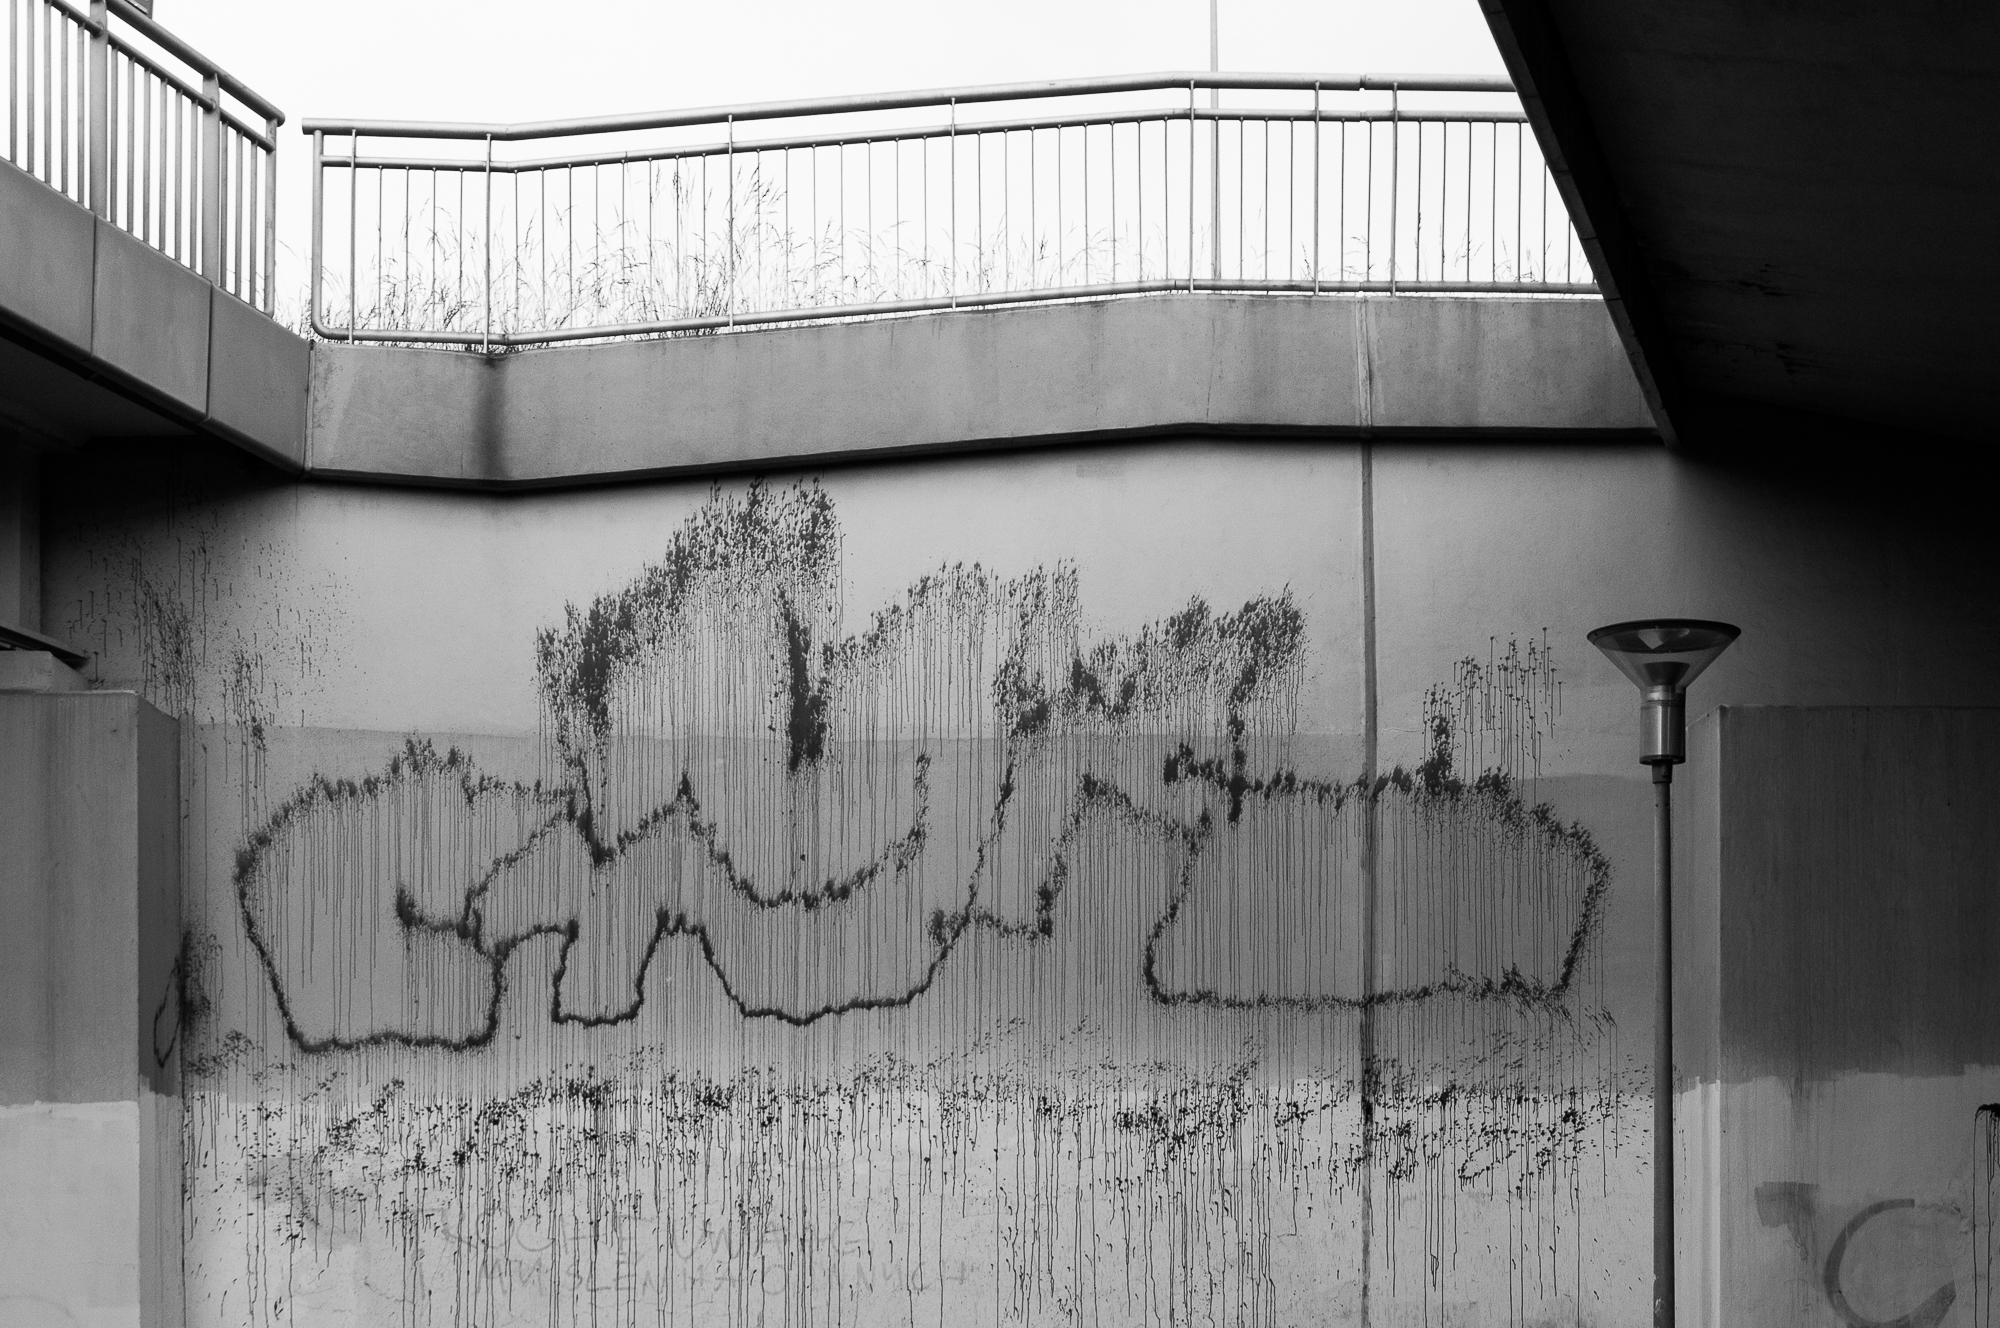 Adam Mazek Photography Warsaw (Warszawa) 2020. Post: "Districts of Warsaw." Minimalism. Mokotow. Graffiti.